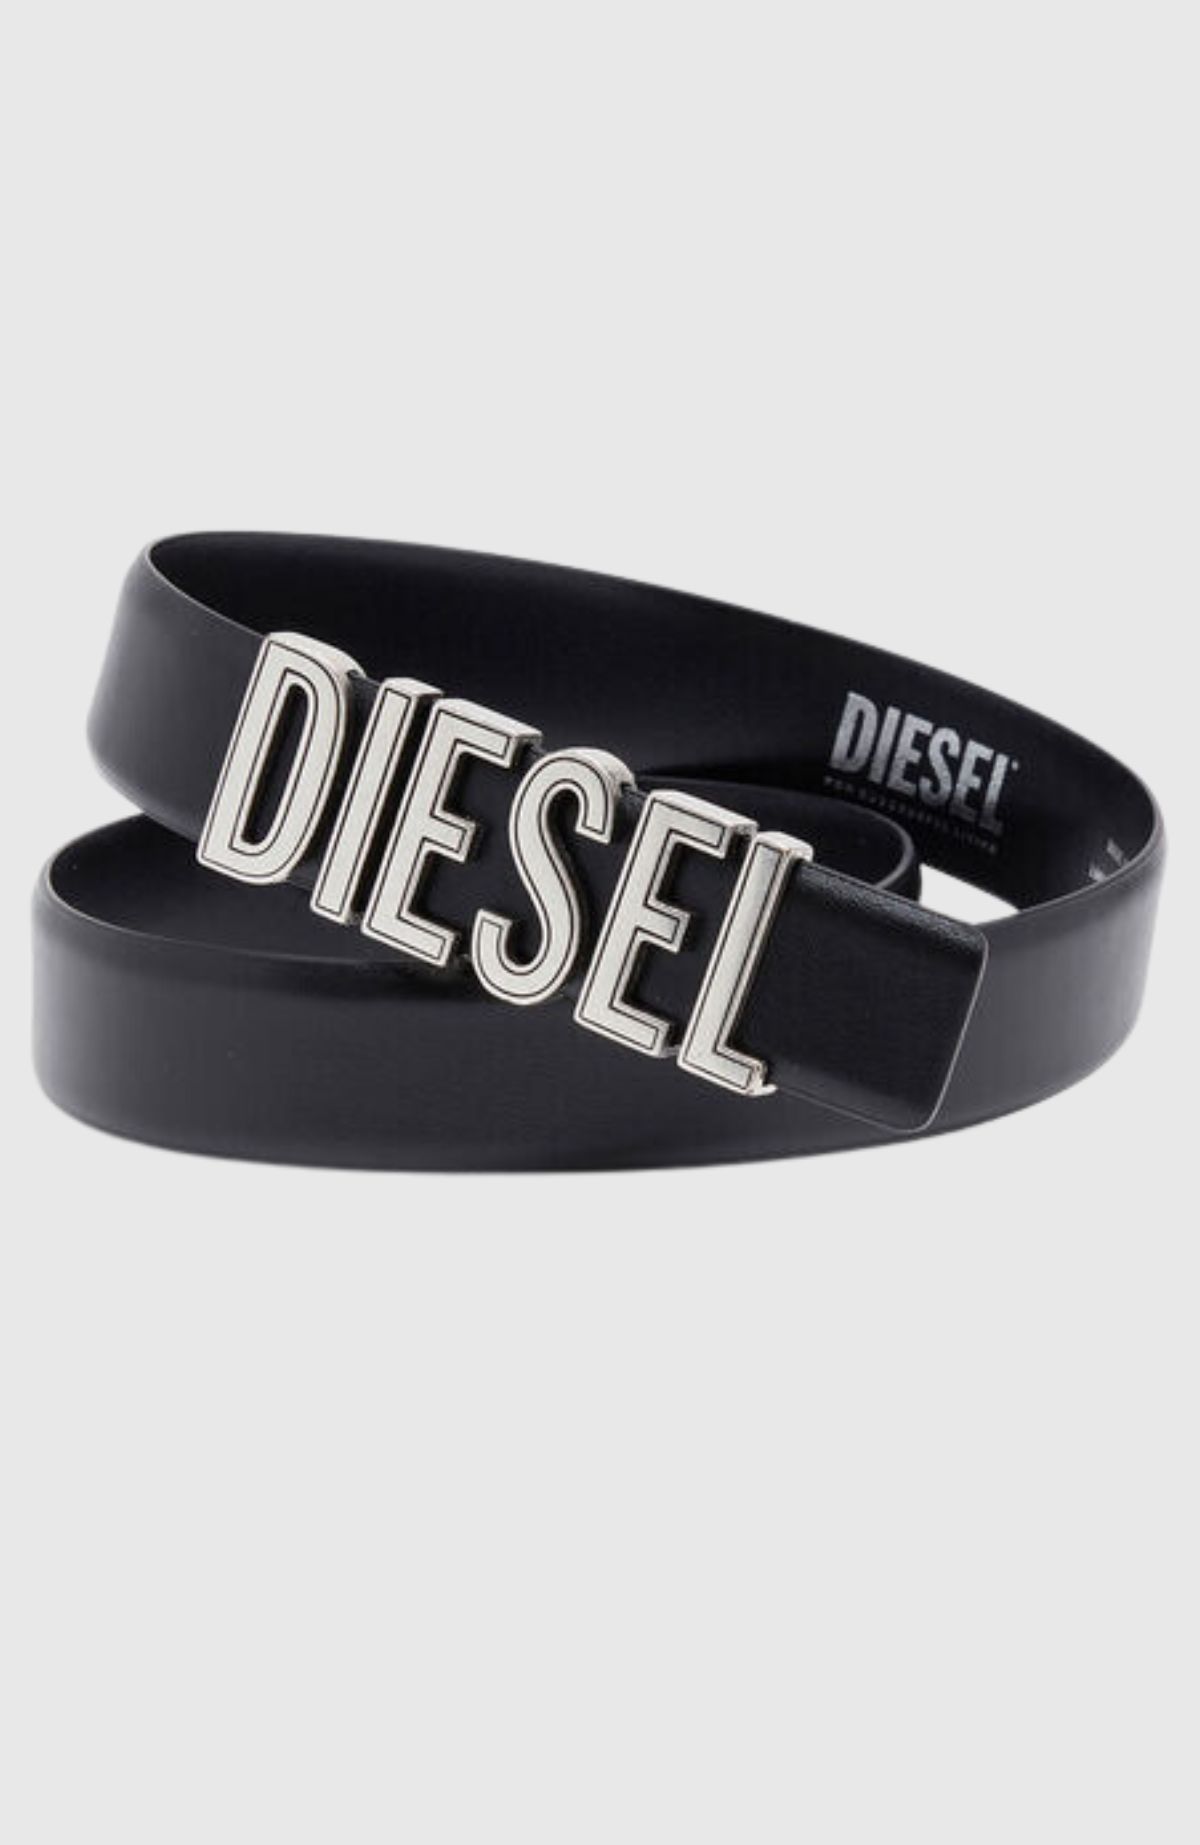 B Diesel Rivets